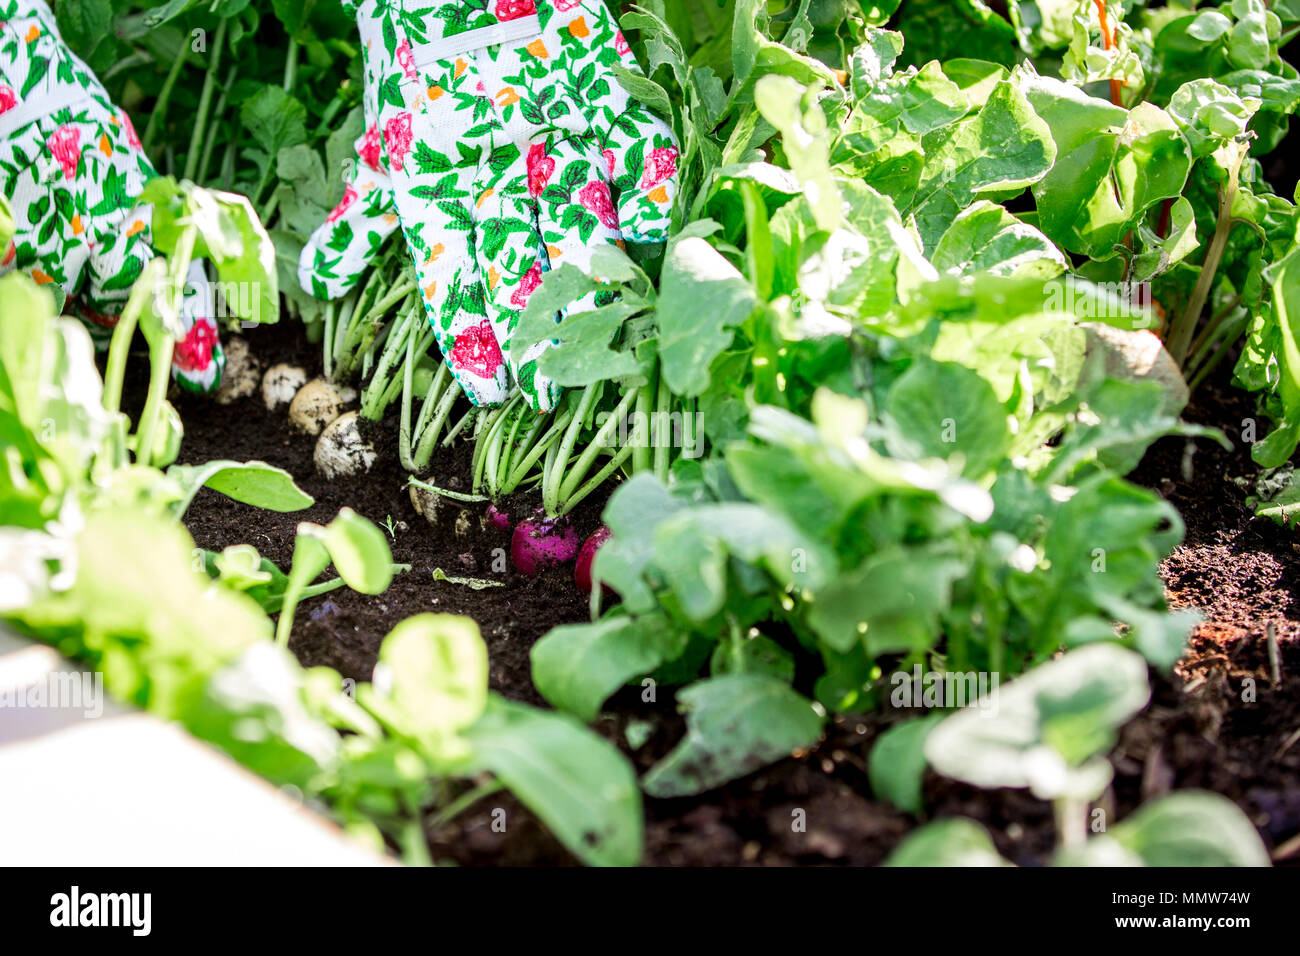 Giardinaggio - Donna è la raccolta di ravanelli dal letto sollevata Foto Stock